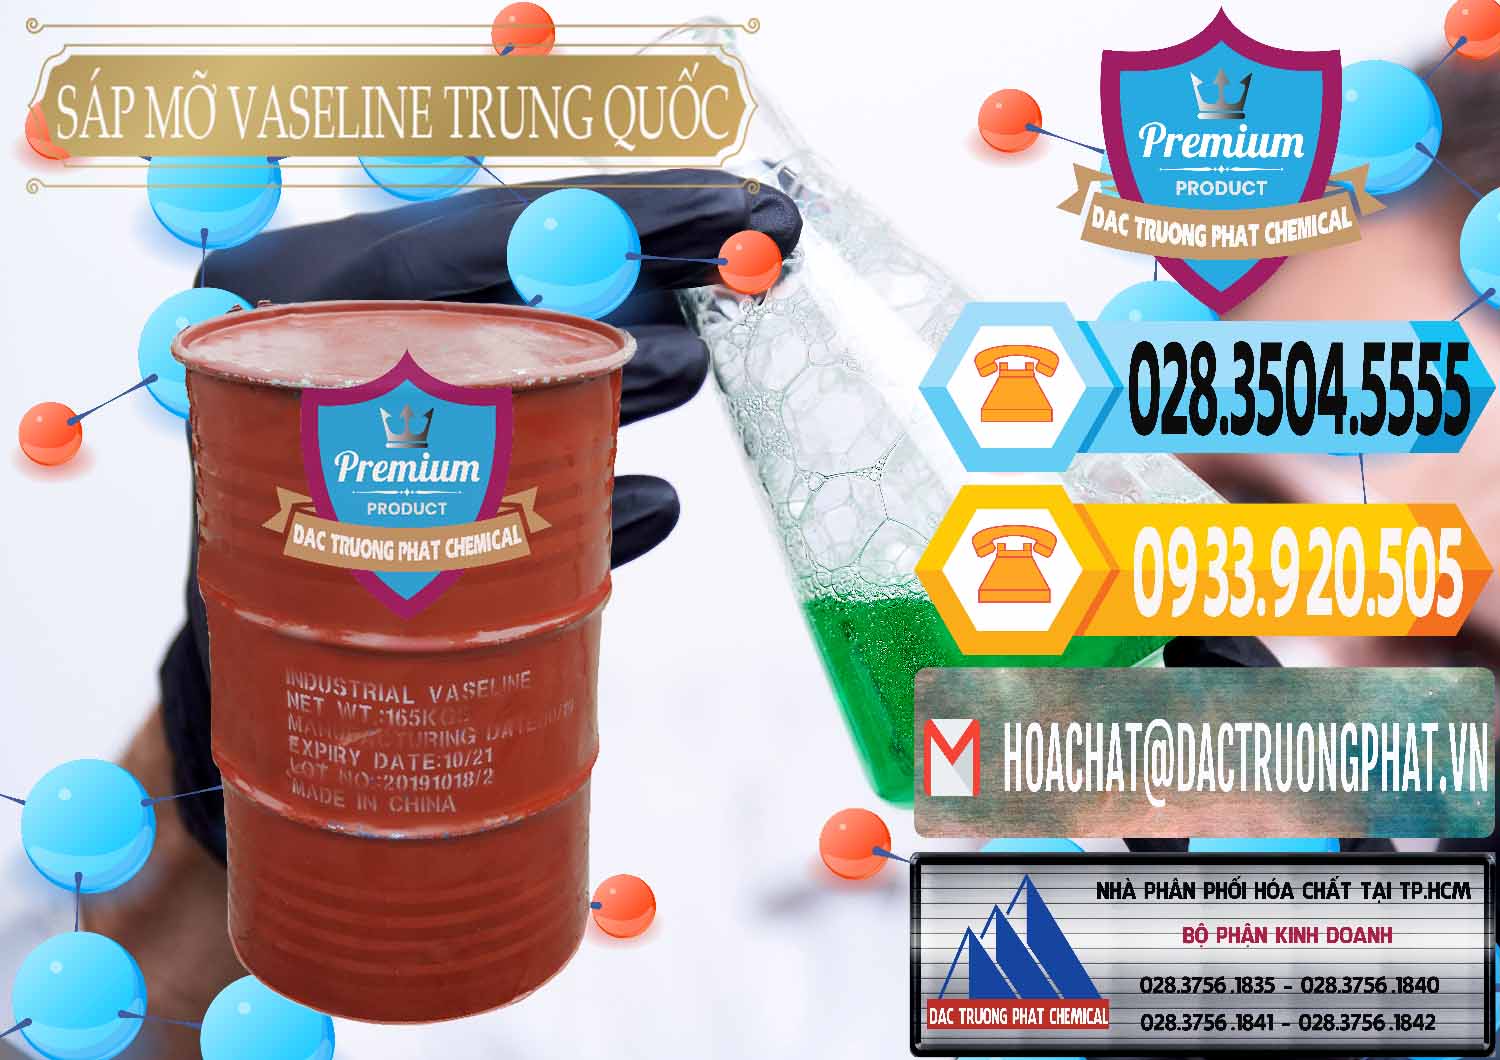 Chuyên kinh doanh & bán Sáp Mỡ Vaseline Trung Quốc China - 0122 - Chuyên phân phối - nhập khẩu hóa chất tại TP.HCM - hoachattayrua.net